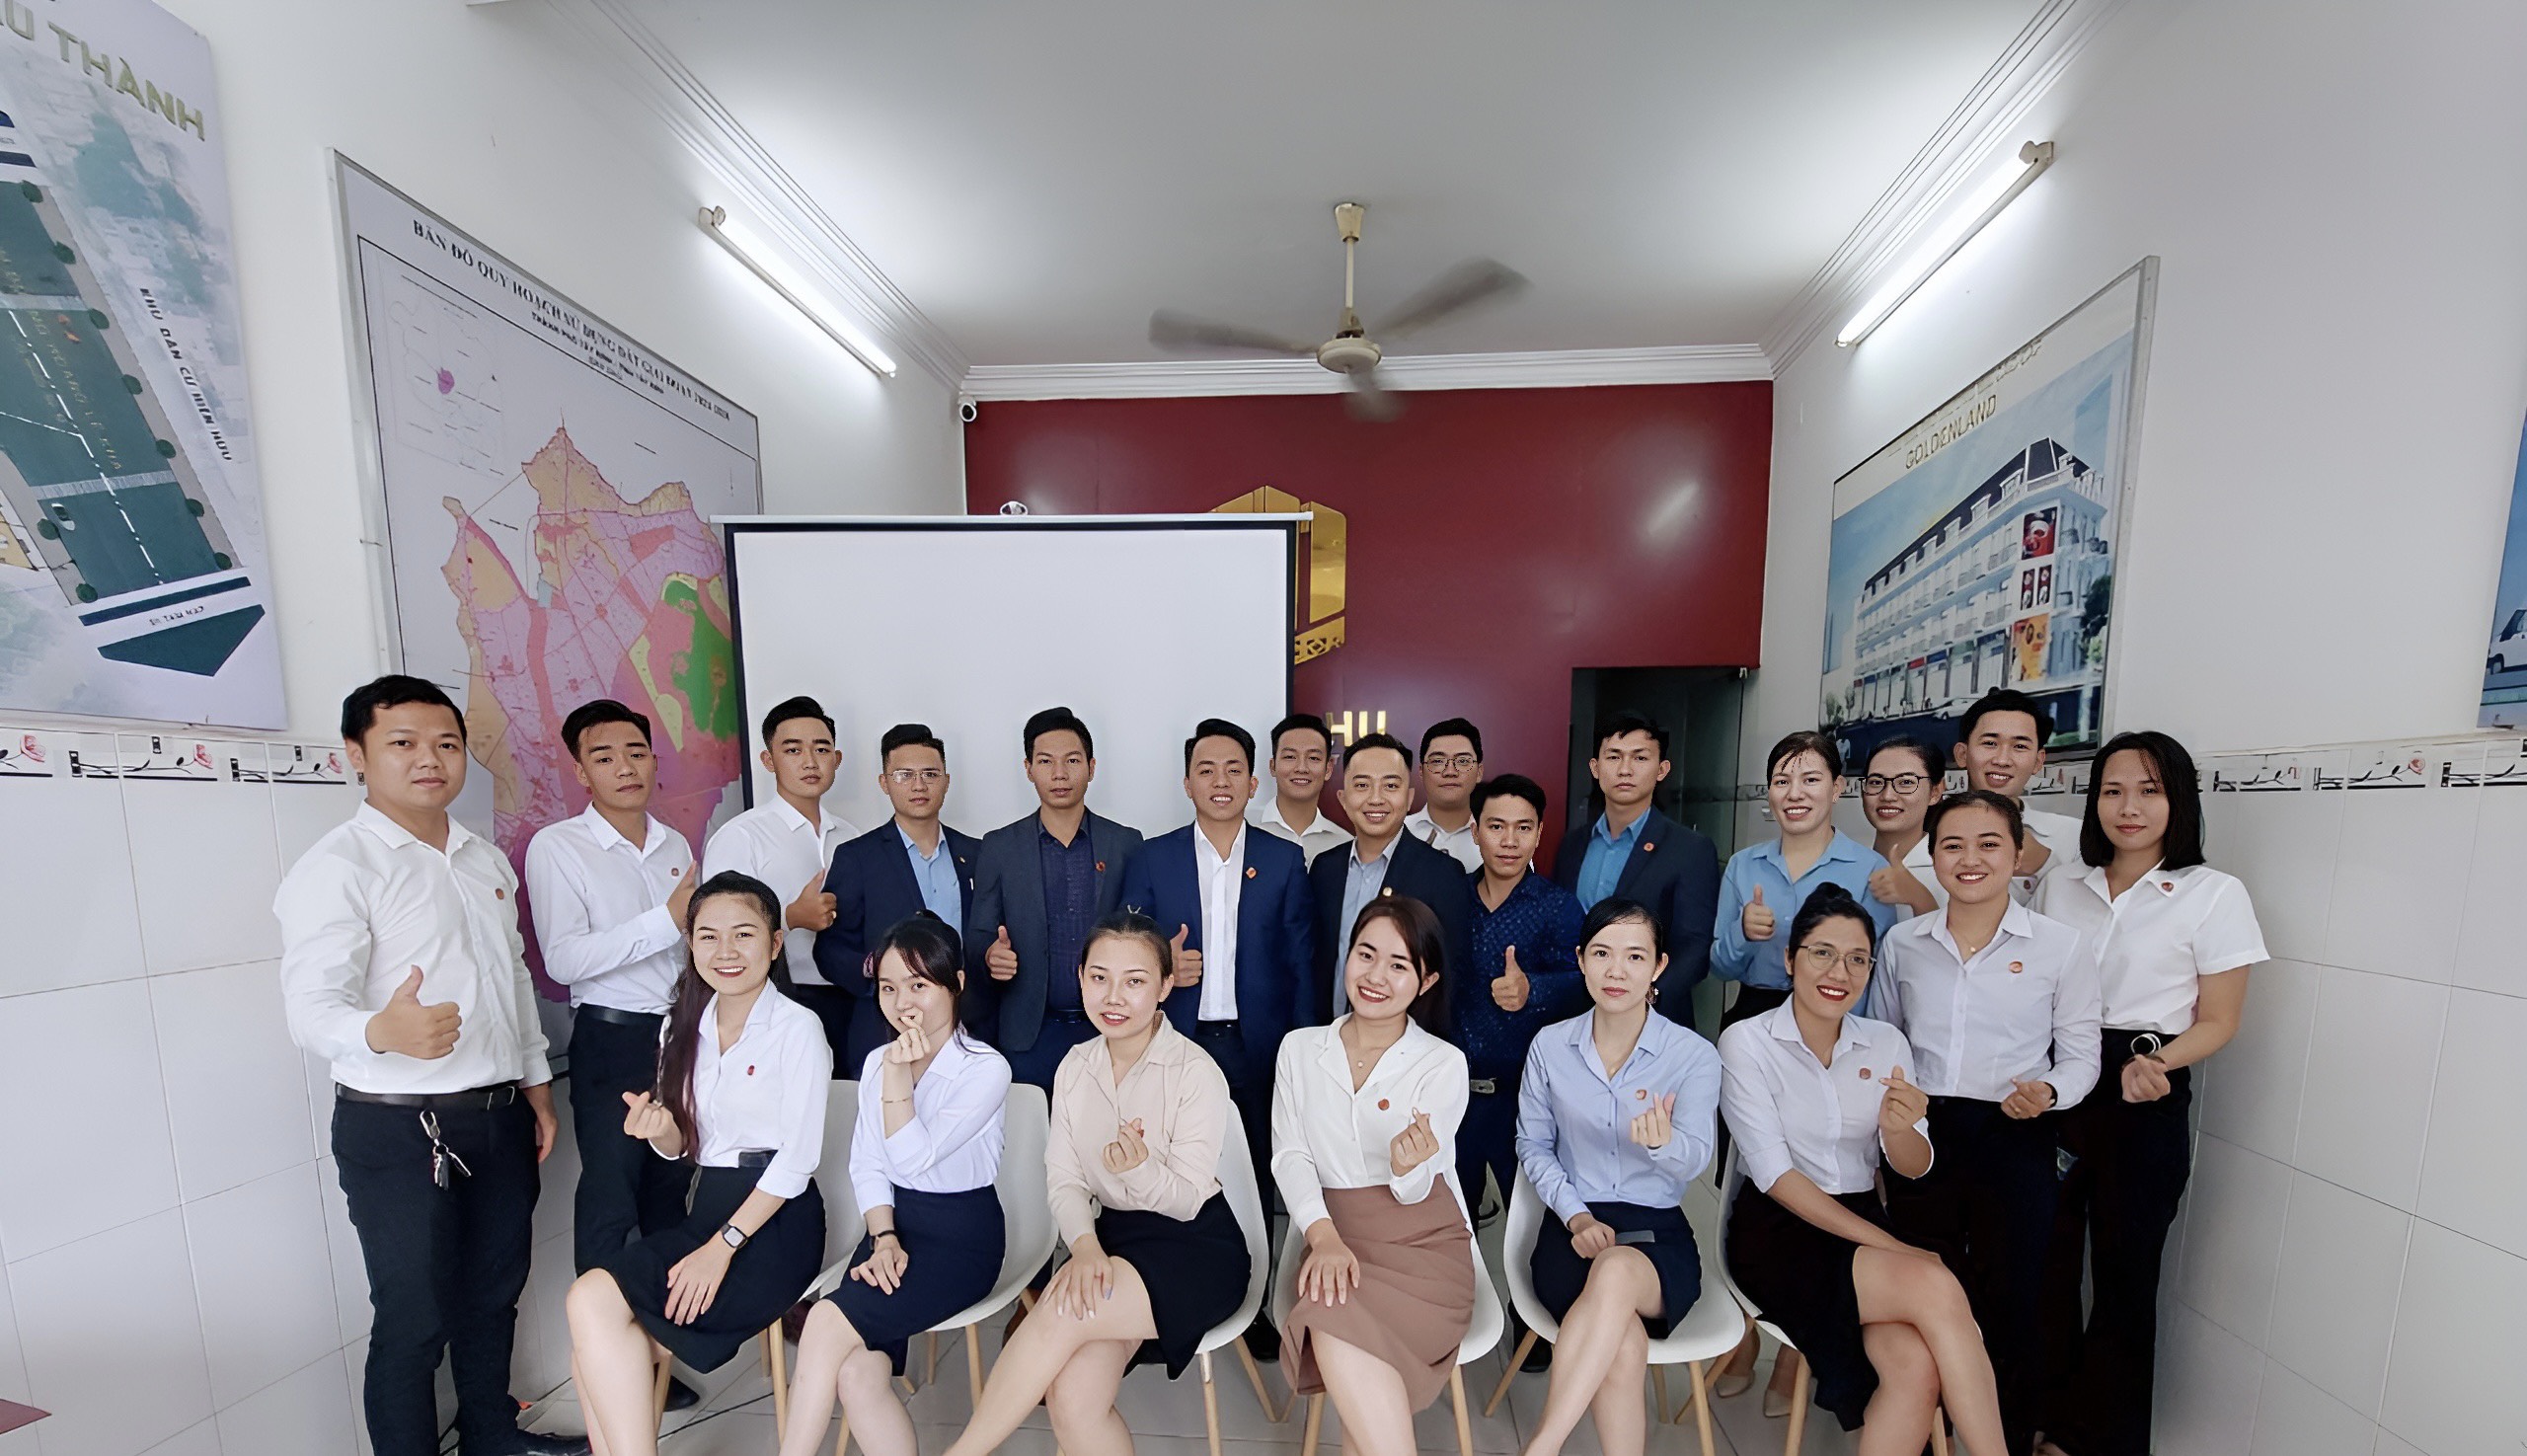 Chương trình họp tổng kết hoạt động kinh doanh quý III & định hướng chiến lược kinh doanh quý IV năm 2022 của Địa ốc Thiên Phú vừa được diễn ra vào chiều ngày 11/10/2022 với sự tham dự đông đủ của tất cả các CBNV và ban lãnh đạo công ty